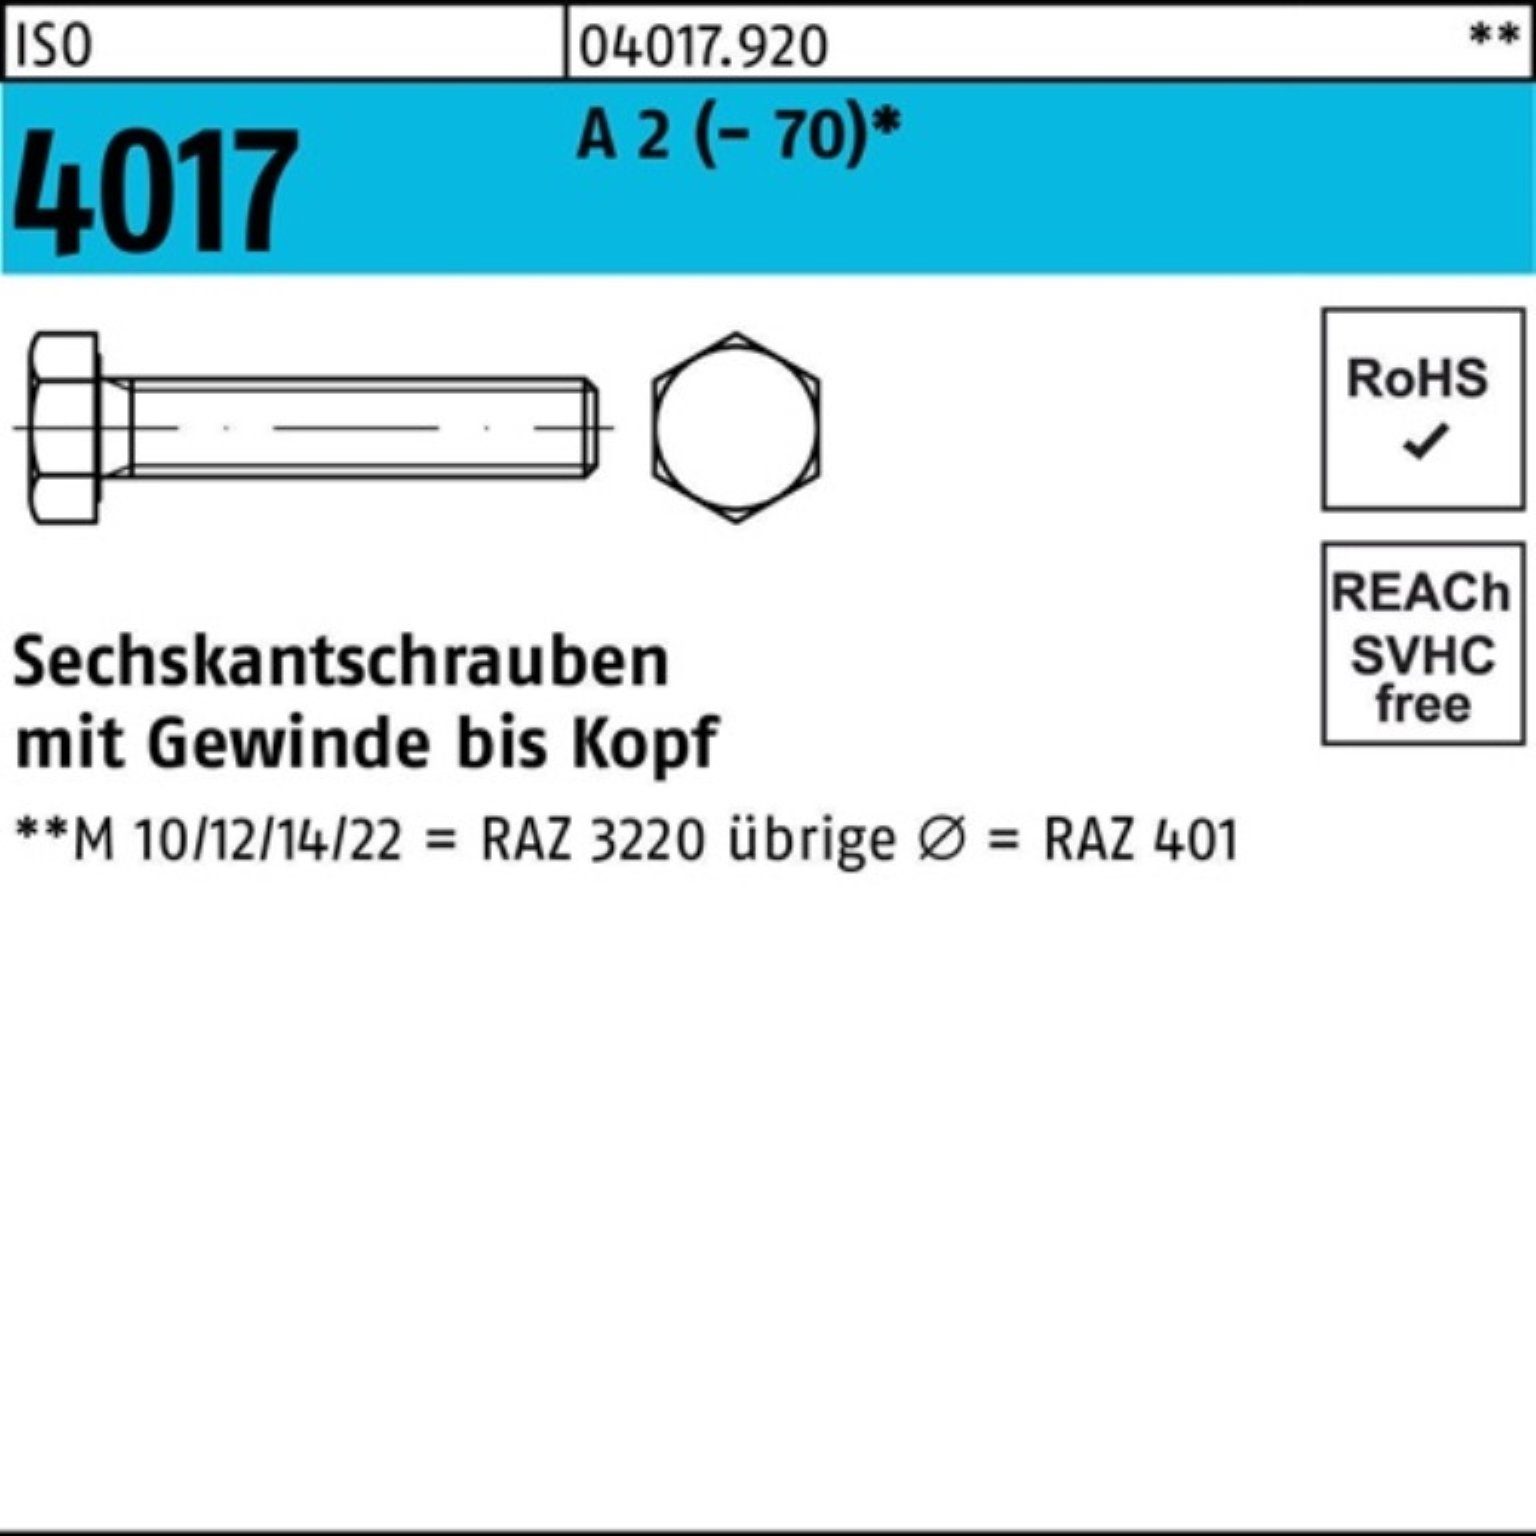 Bufab Sechskantschraube 100er Pack Sechskantschraube ISO 4017 VG M5x 14 A 2 (70) 100 Stück